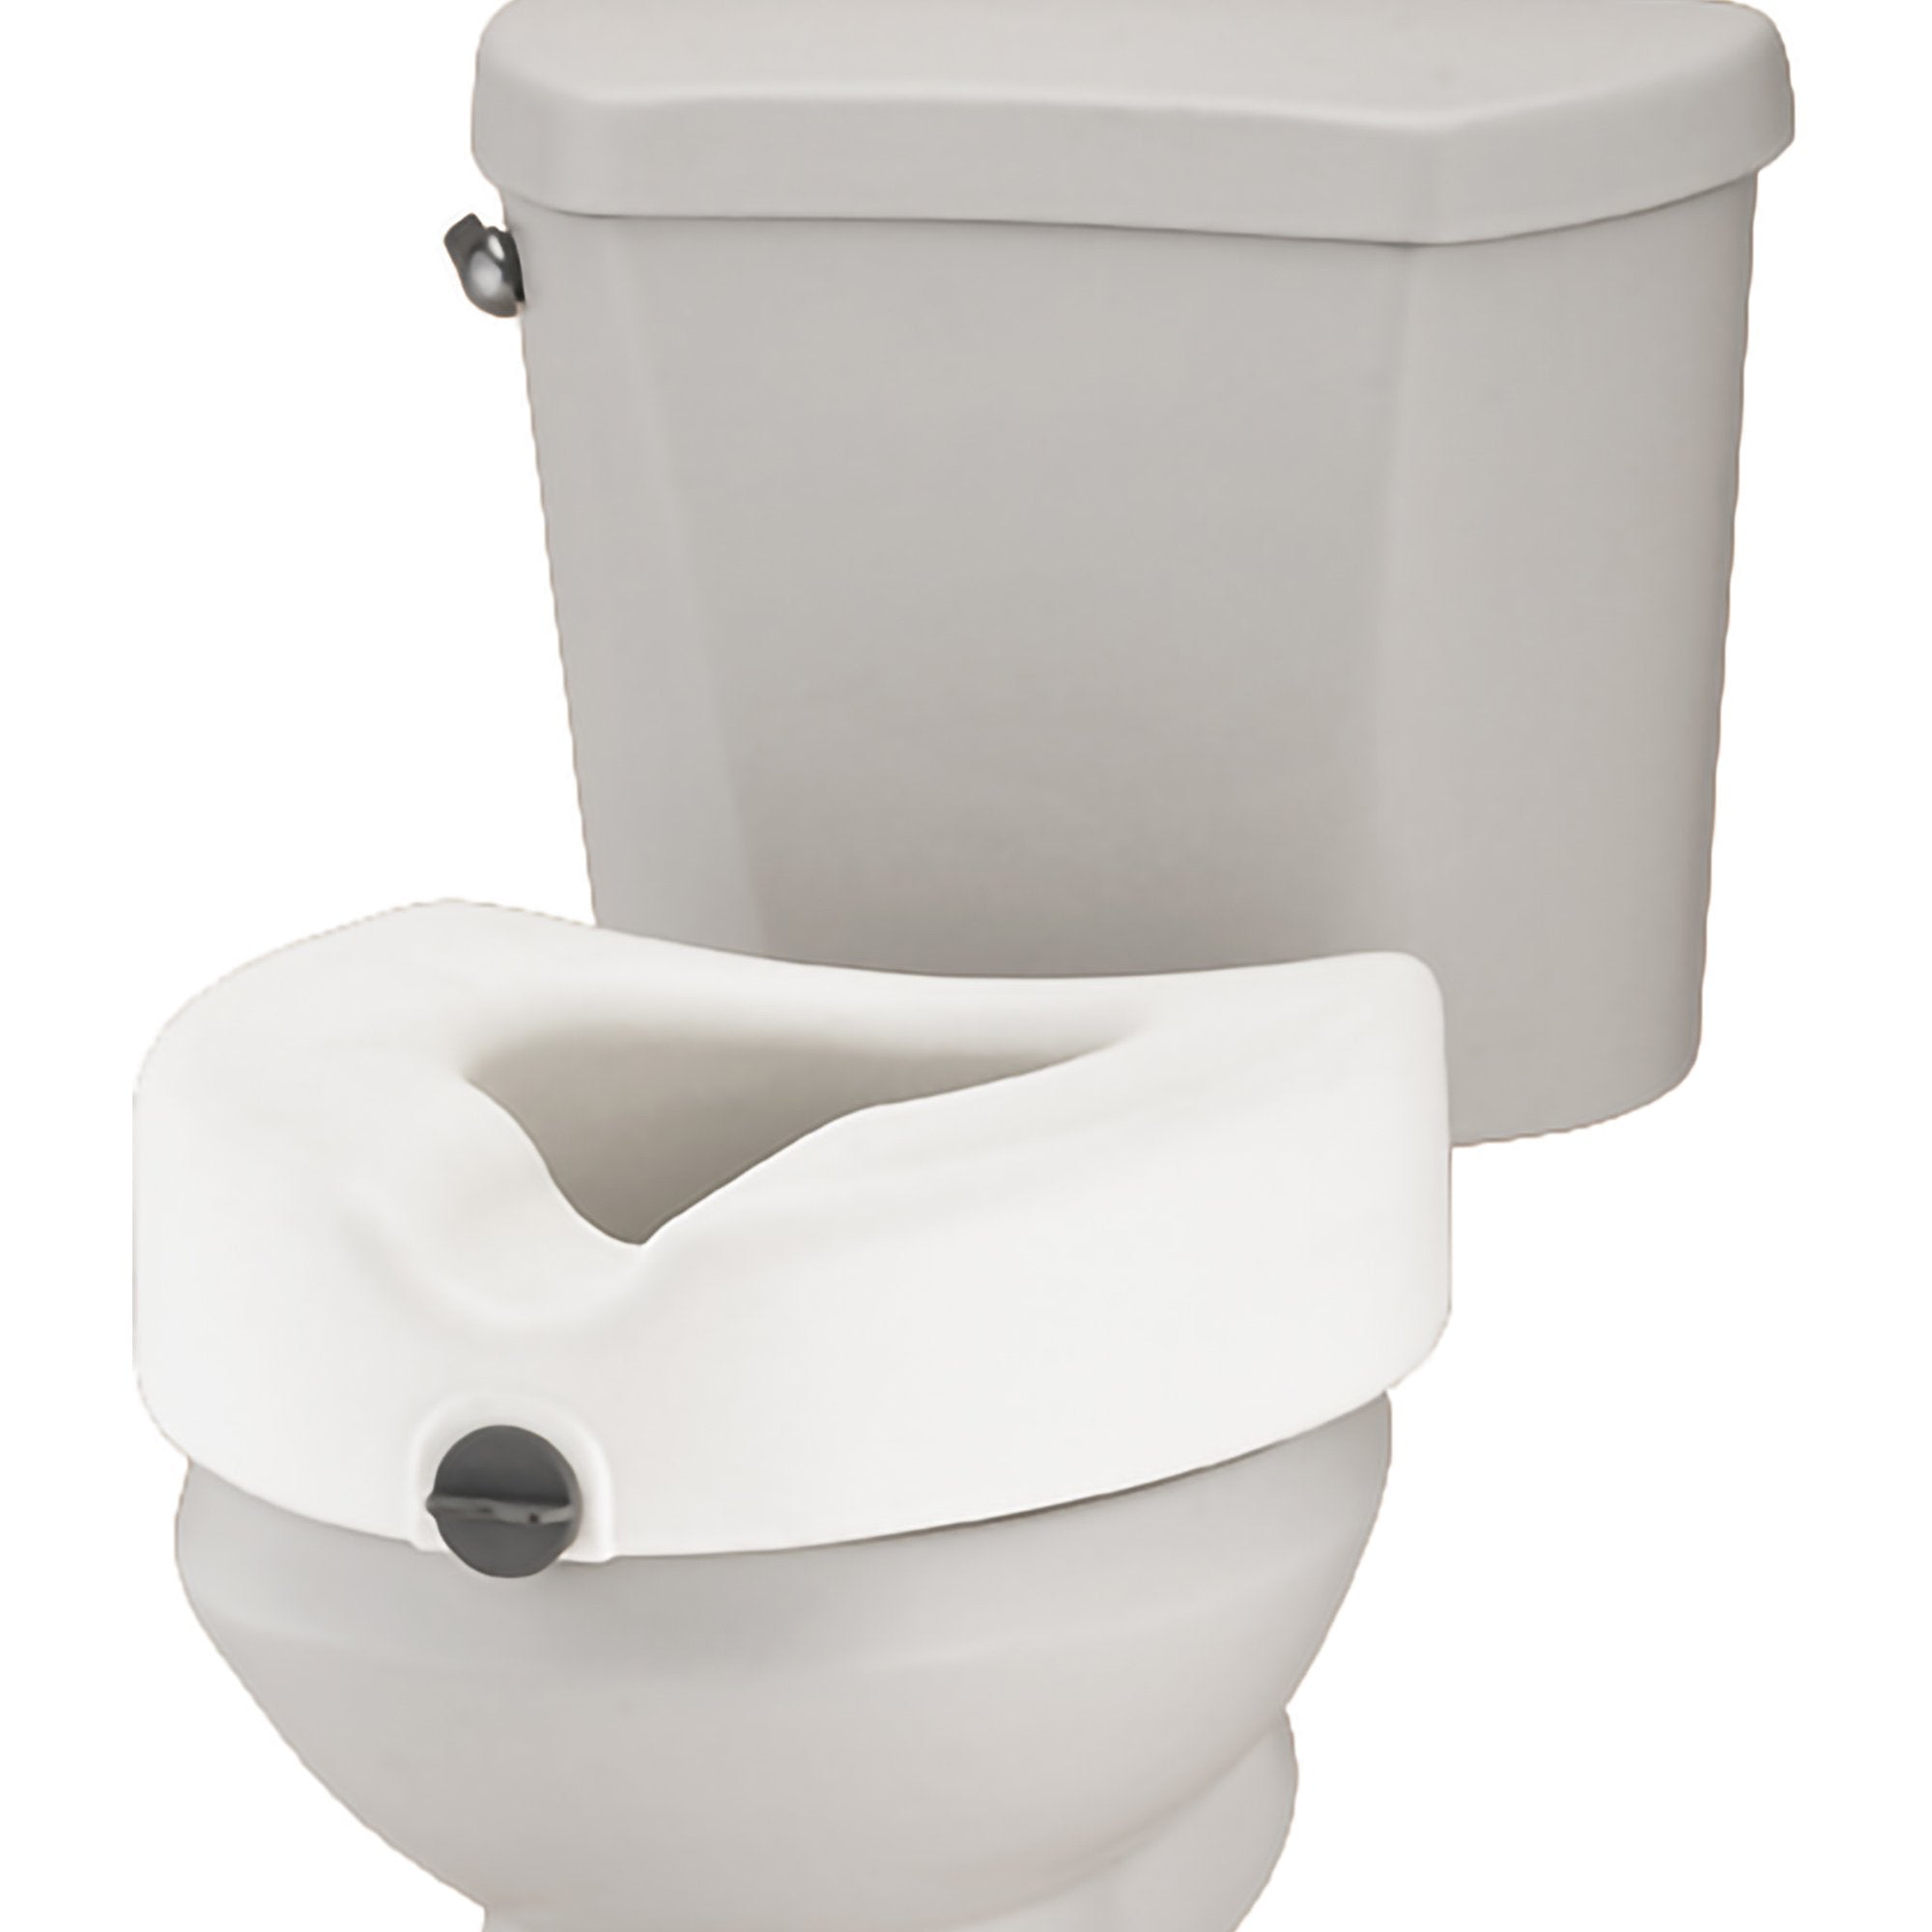 Locking Raised Toilet Seat Nova 5 Inch Height White 300 lbs. Weight Capacity